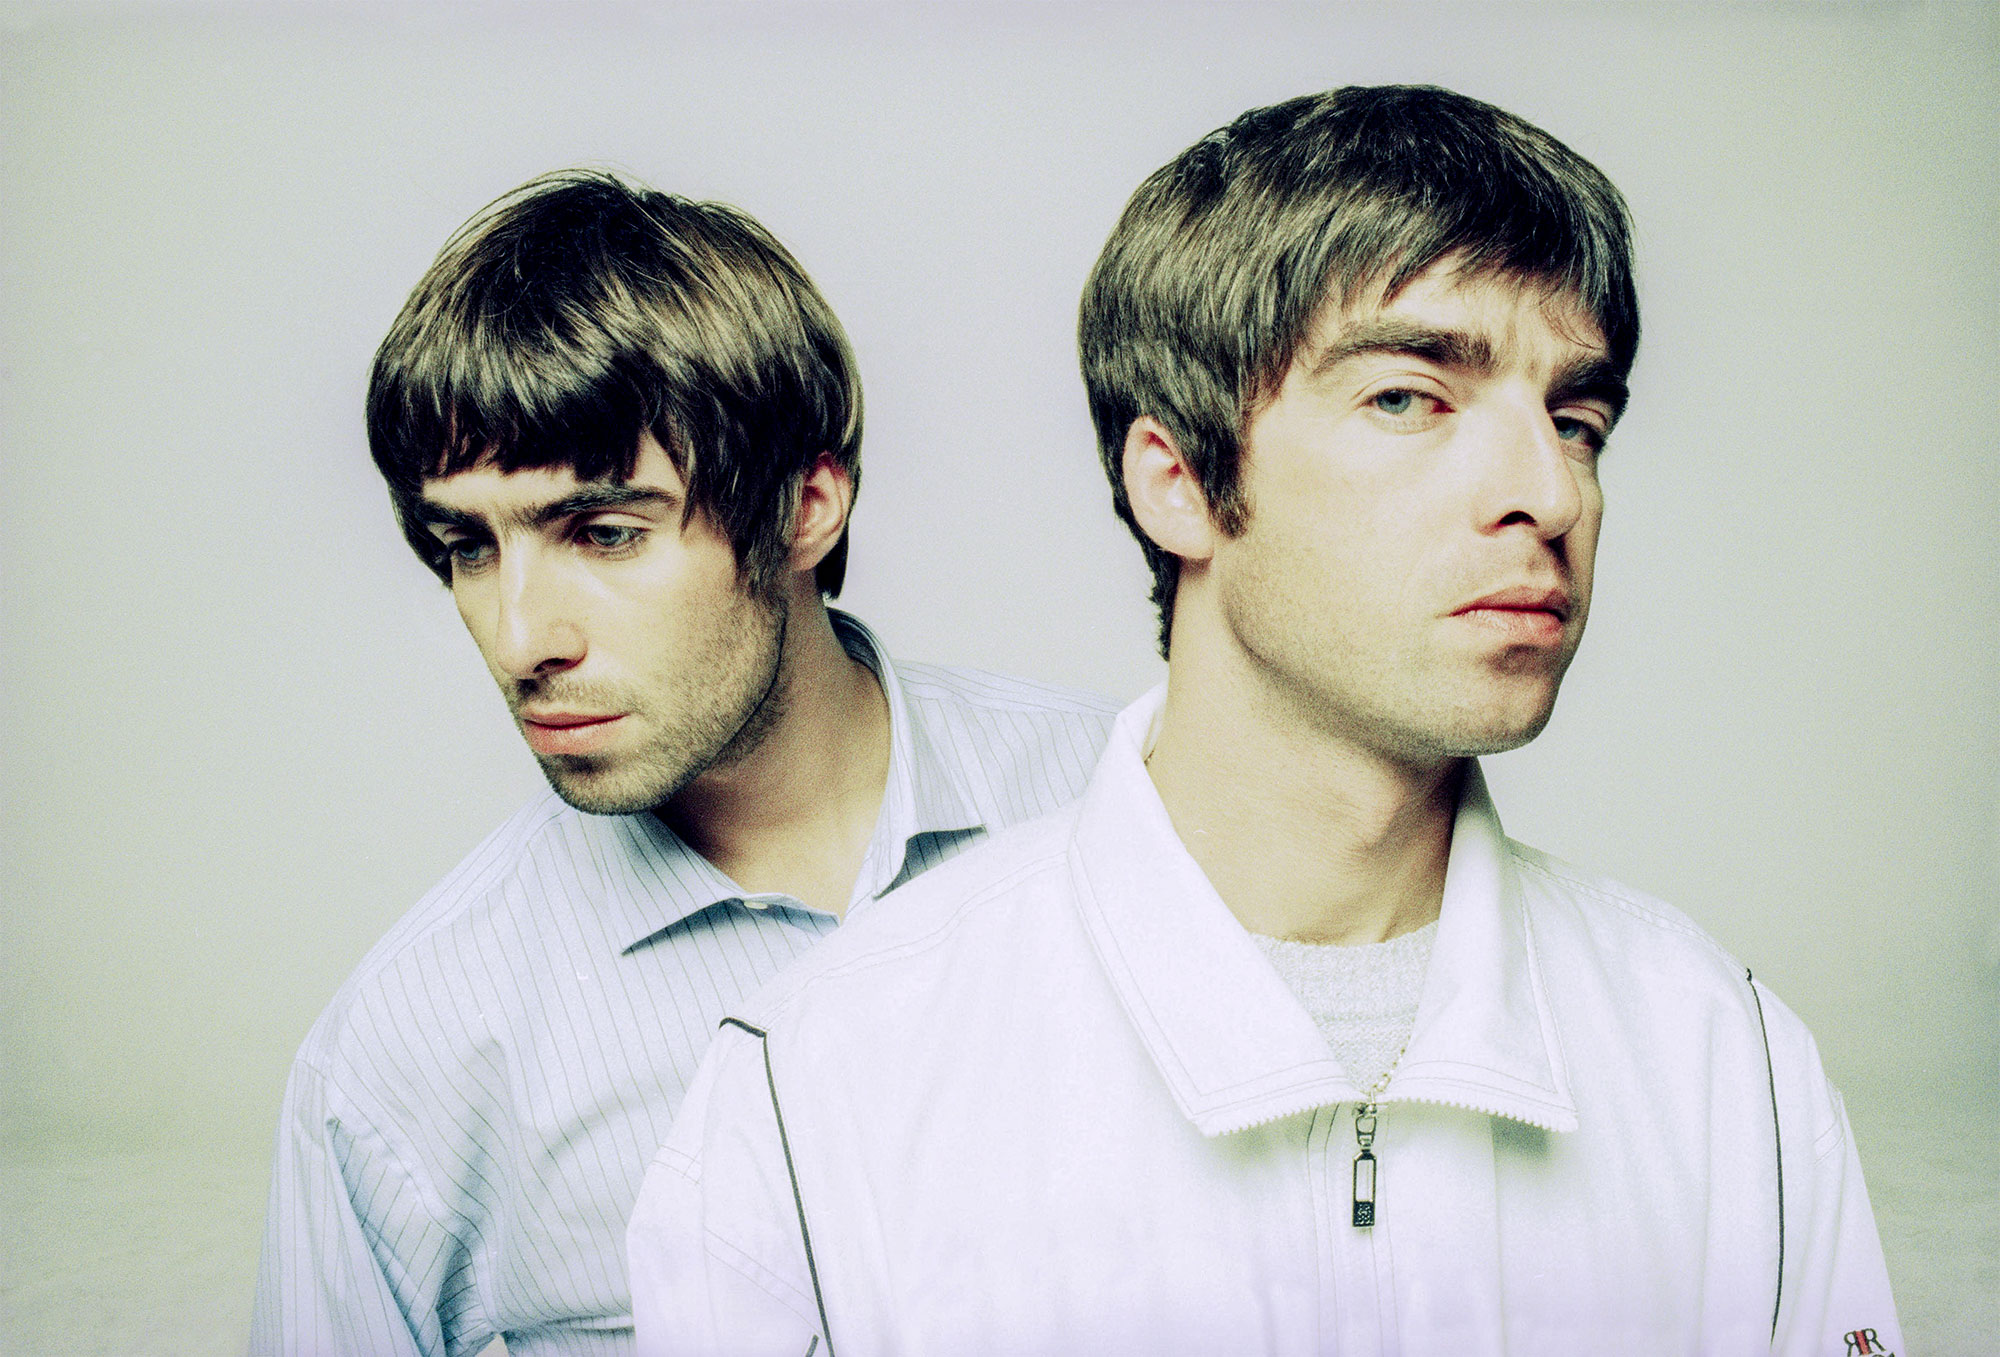 Oasis. Going Nowhere. Demo. Be Here Now. Reedición. Cúsica Plus